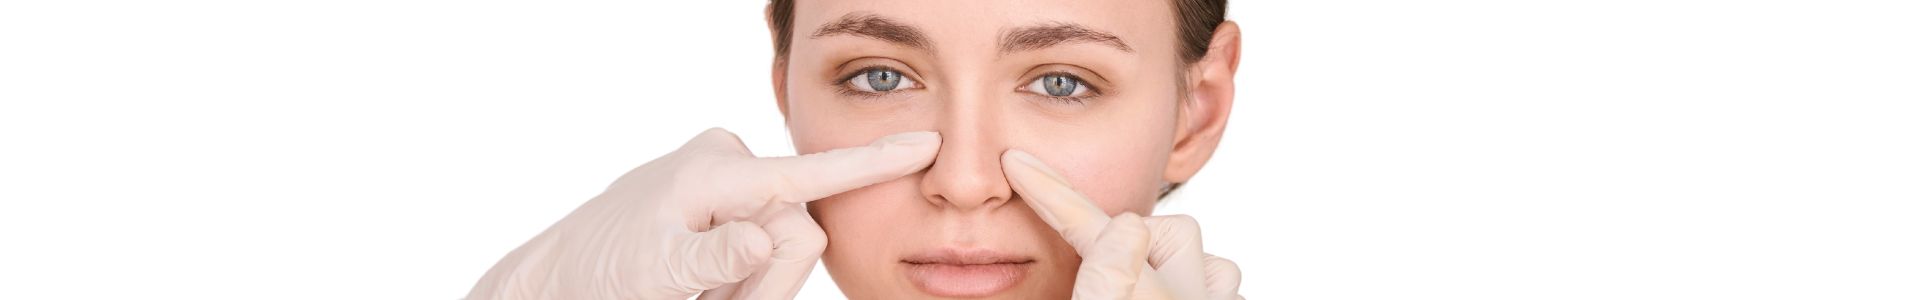 Rinomodelación nariz ancha tratamiento en la clínica de medicina estética EB